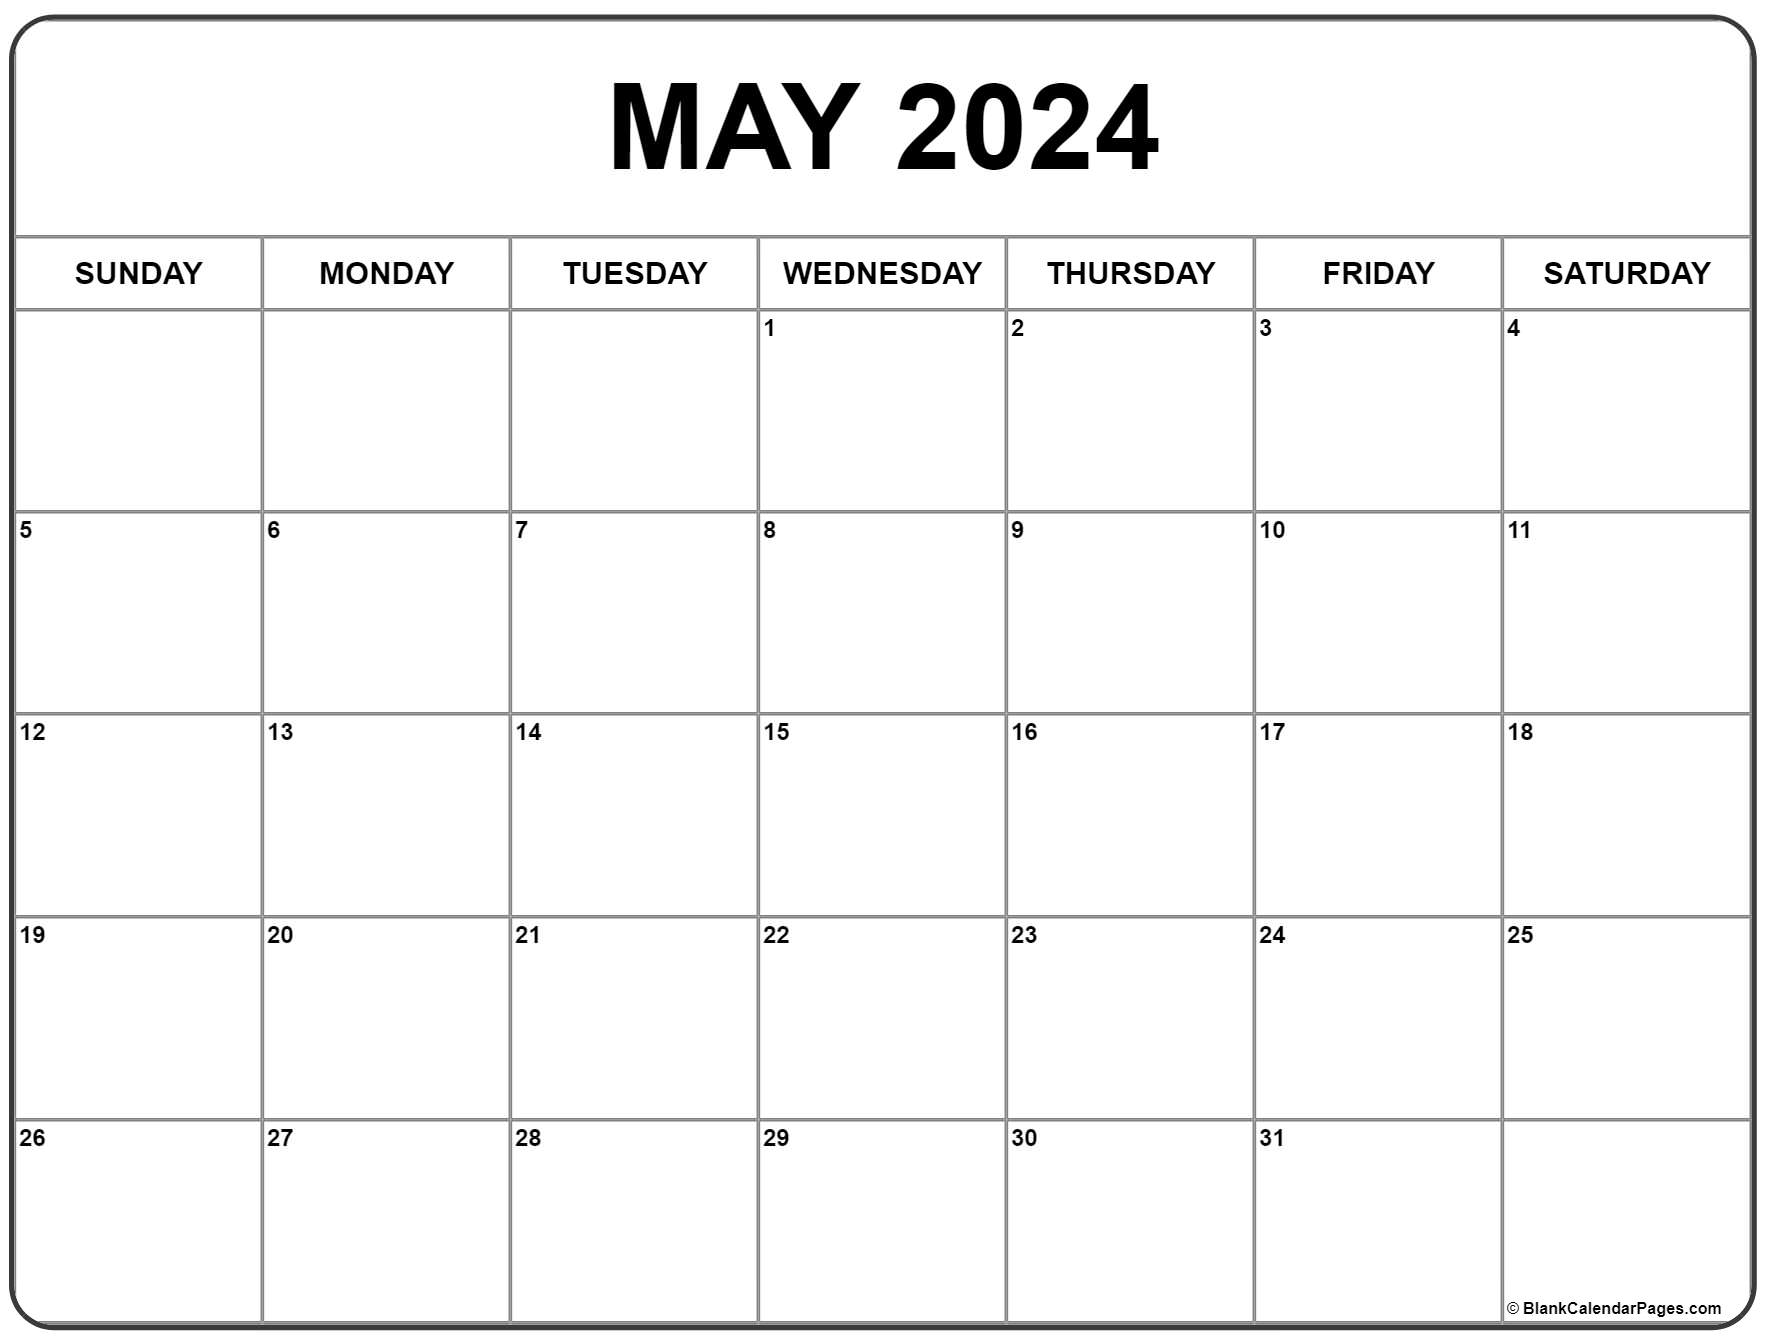 May 2024 Calendar | Free Printable Calendar for Printable Calendar Page May 2024